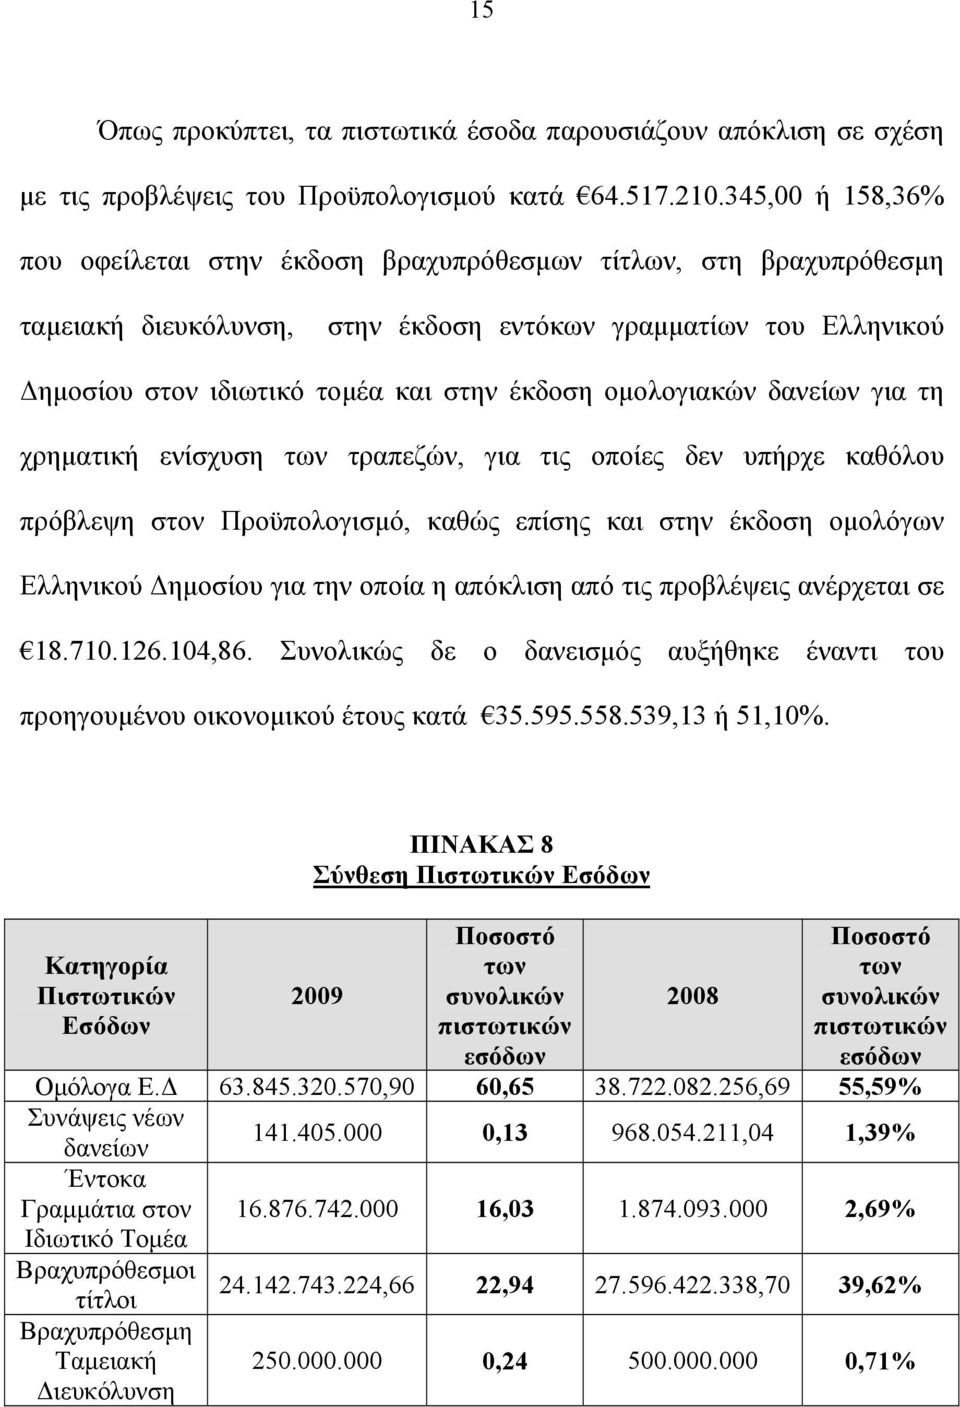 ομολογιακών δανείων για τη χρηματική ενίσχυση των τραπεζών, για τις οποίες δεν υπήρχε καθόλου πρόβλεψη στον Προϋπολογισμό, καθώς επίσης και στην έκδοση ομολόγων Ελληνικού Δημοσίου για την οποία η